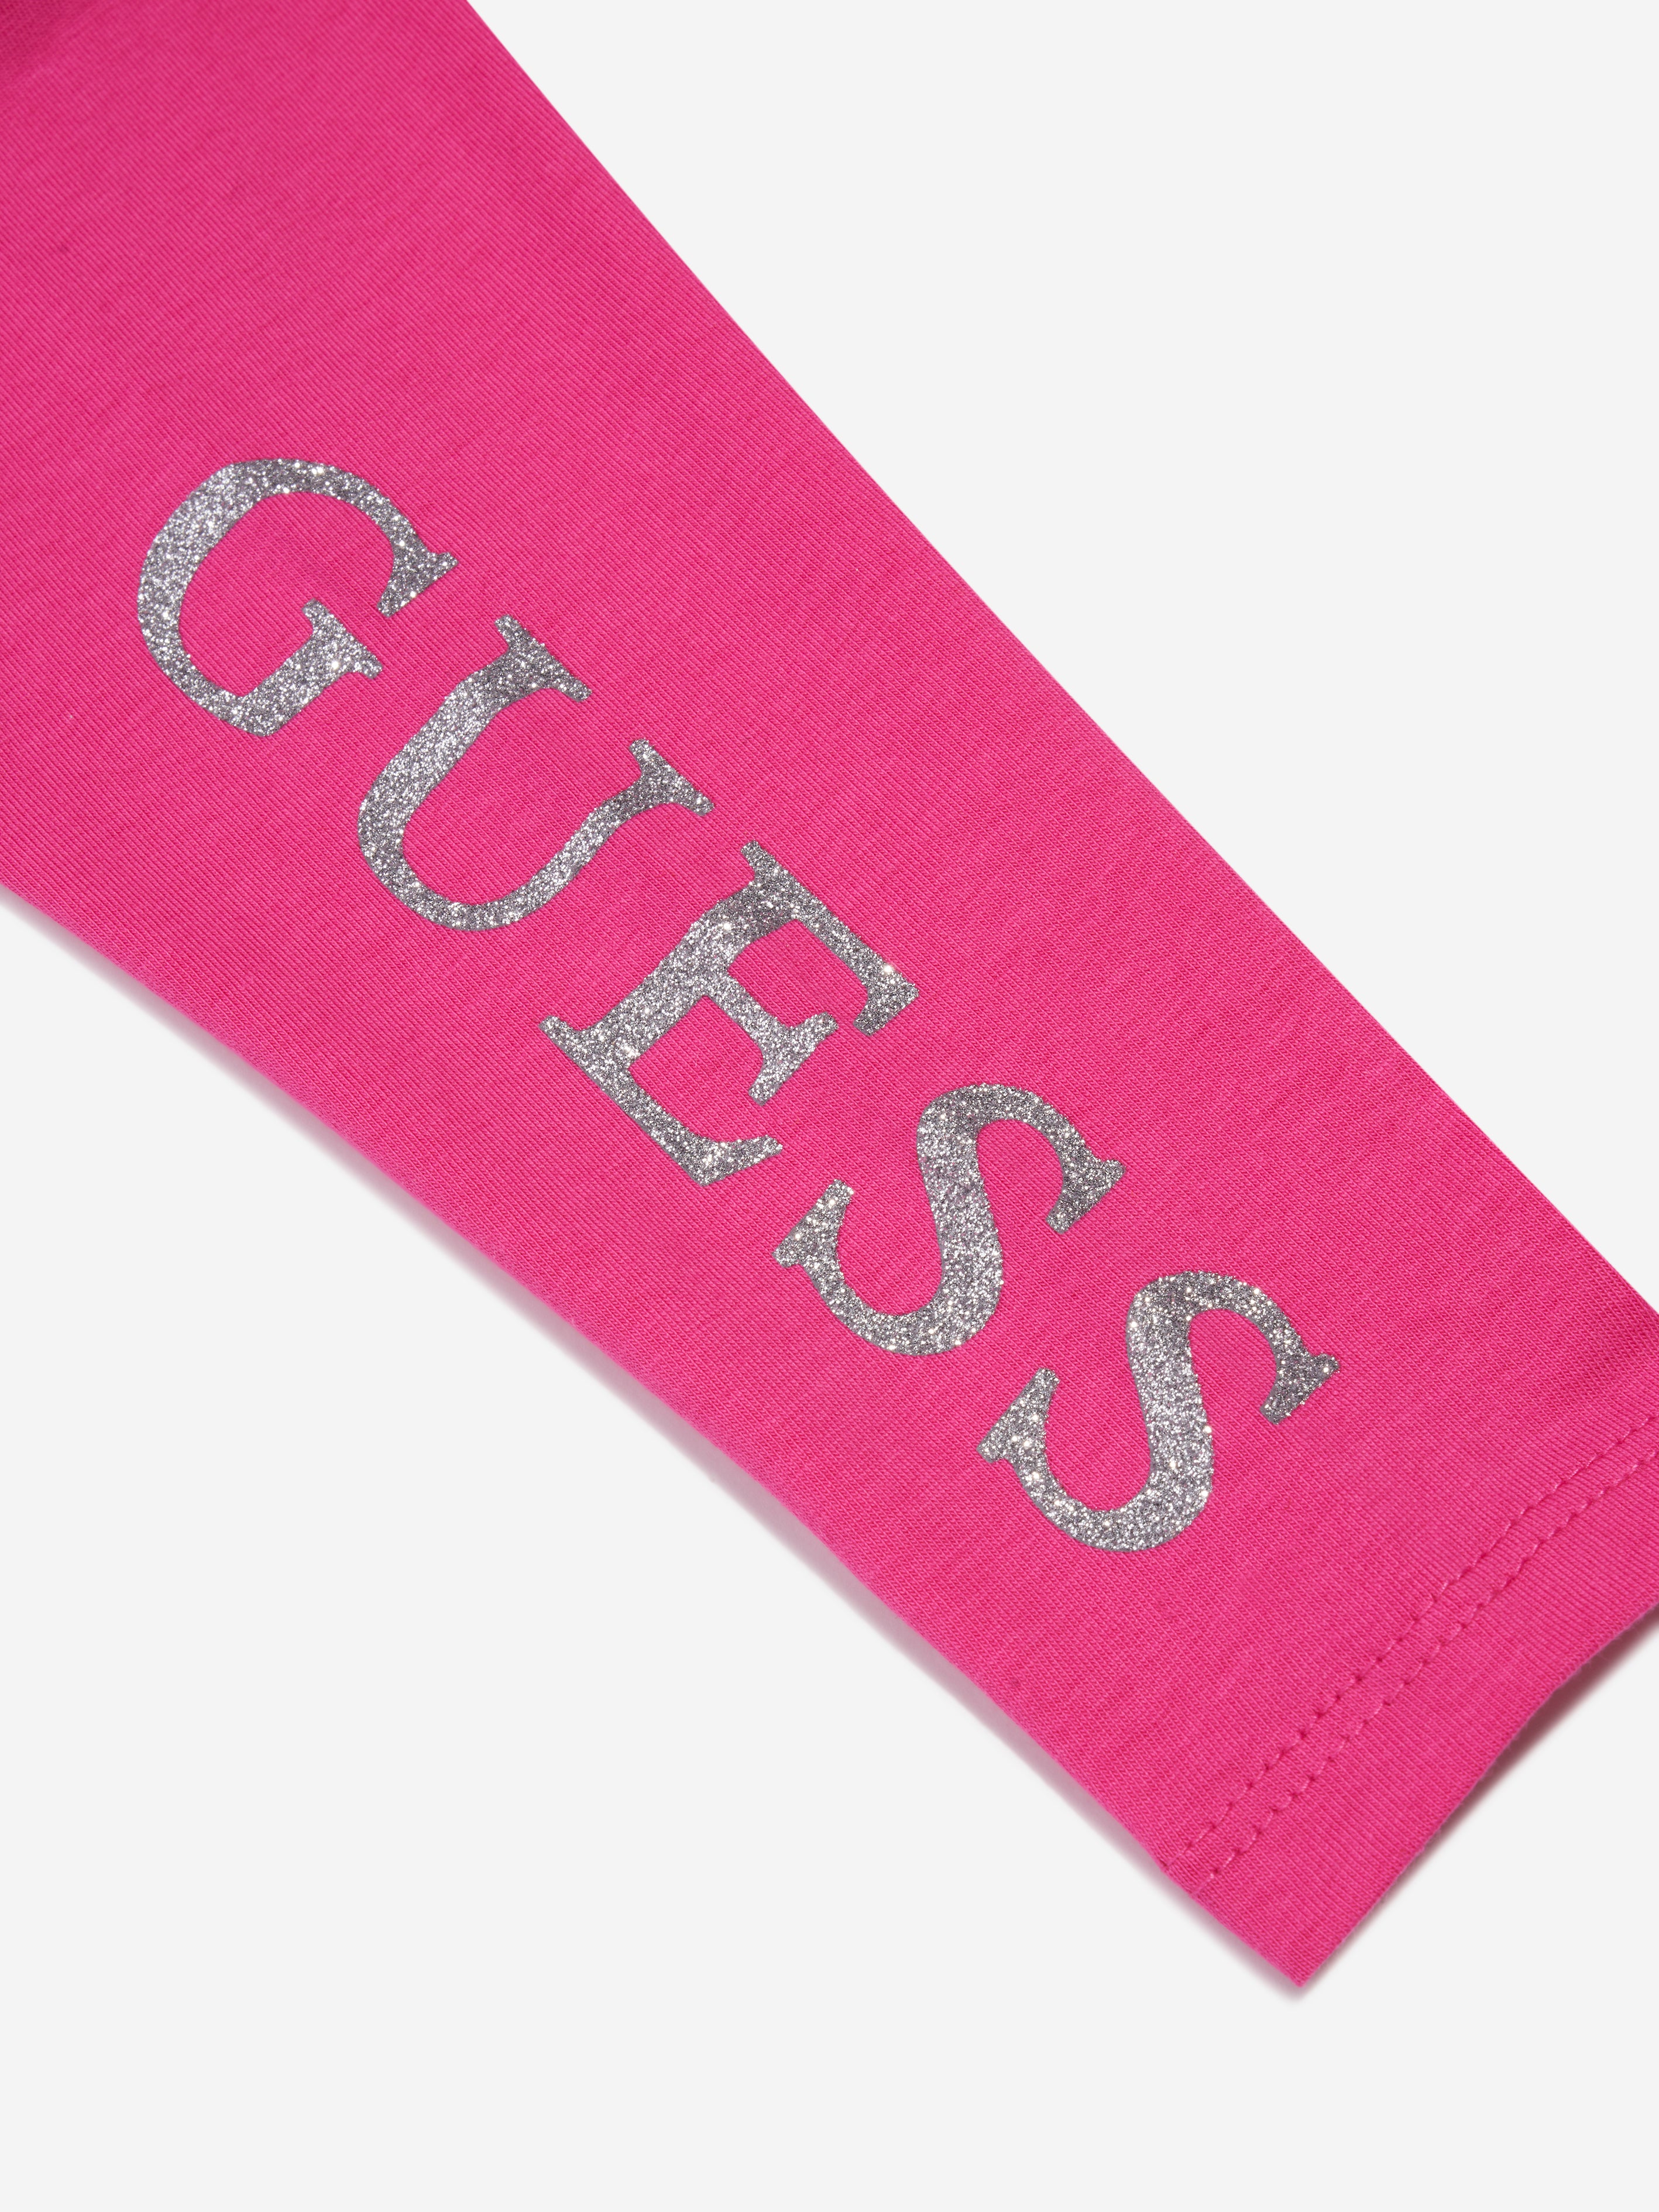 Guess Girls Pink Logo Leggings